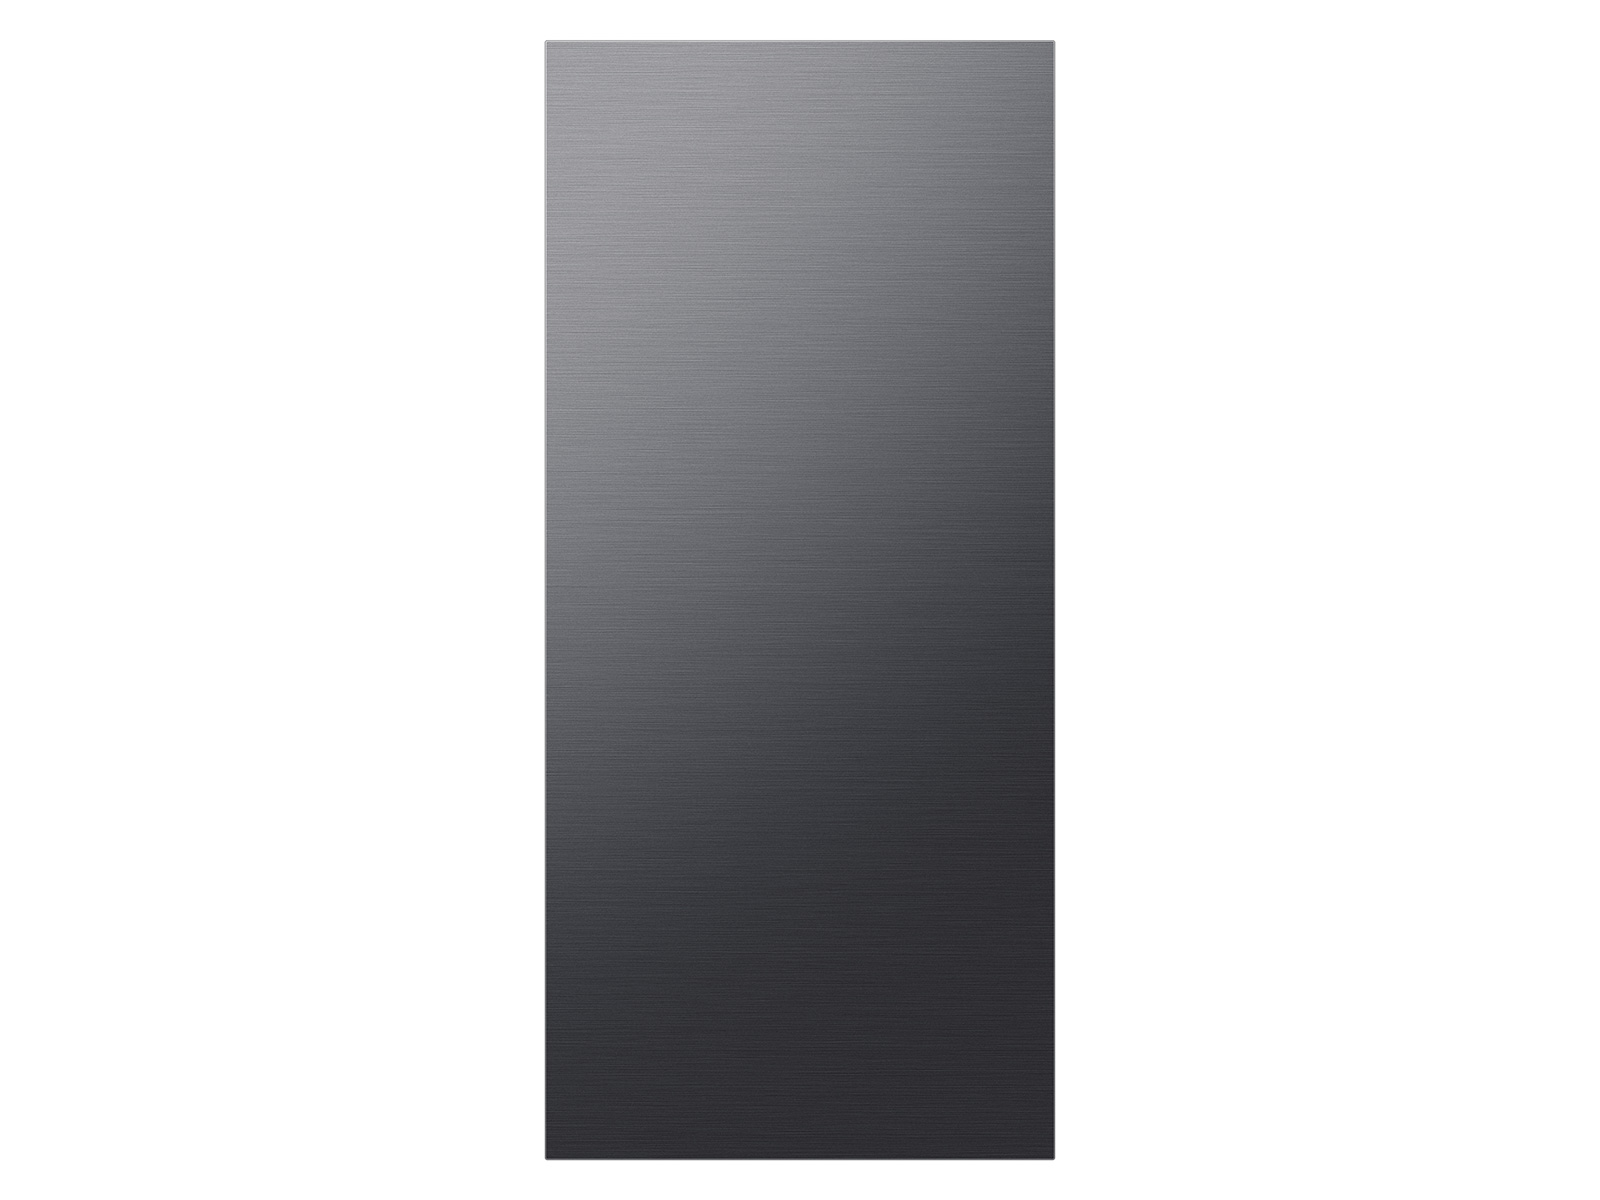 Thumbnail image of BESPOKE 4-Door Flex&trade; Refrigerator Panel in Matte Black Steel - Top Panel